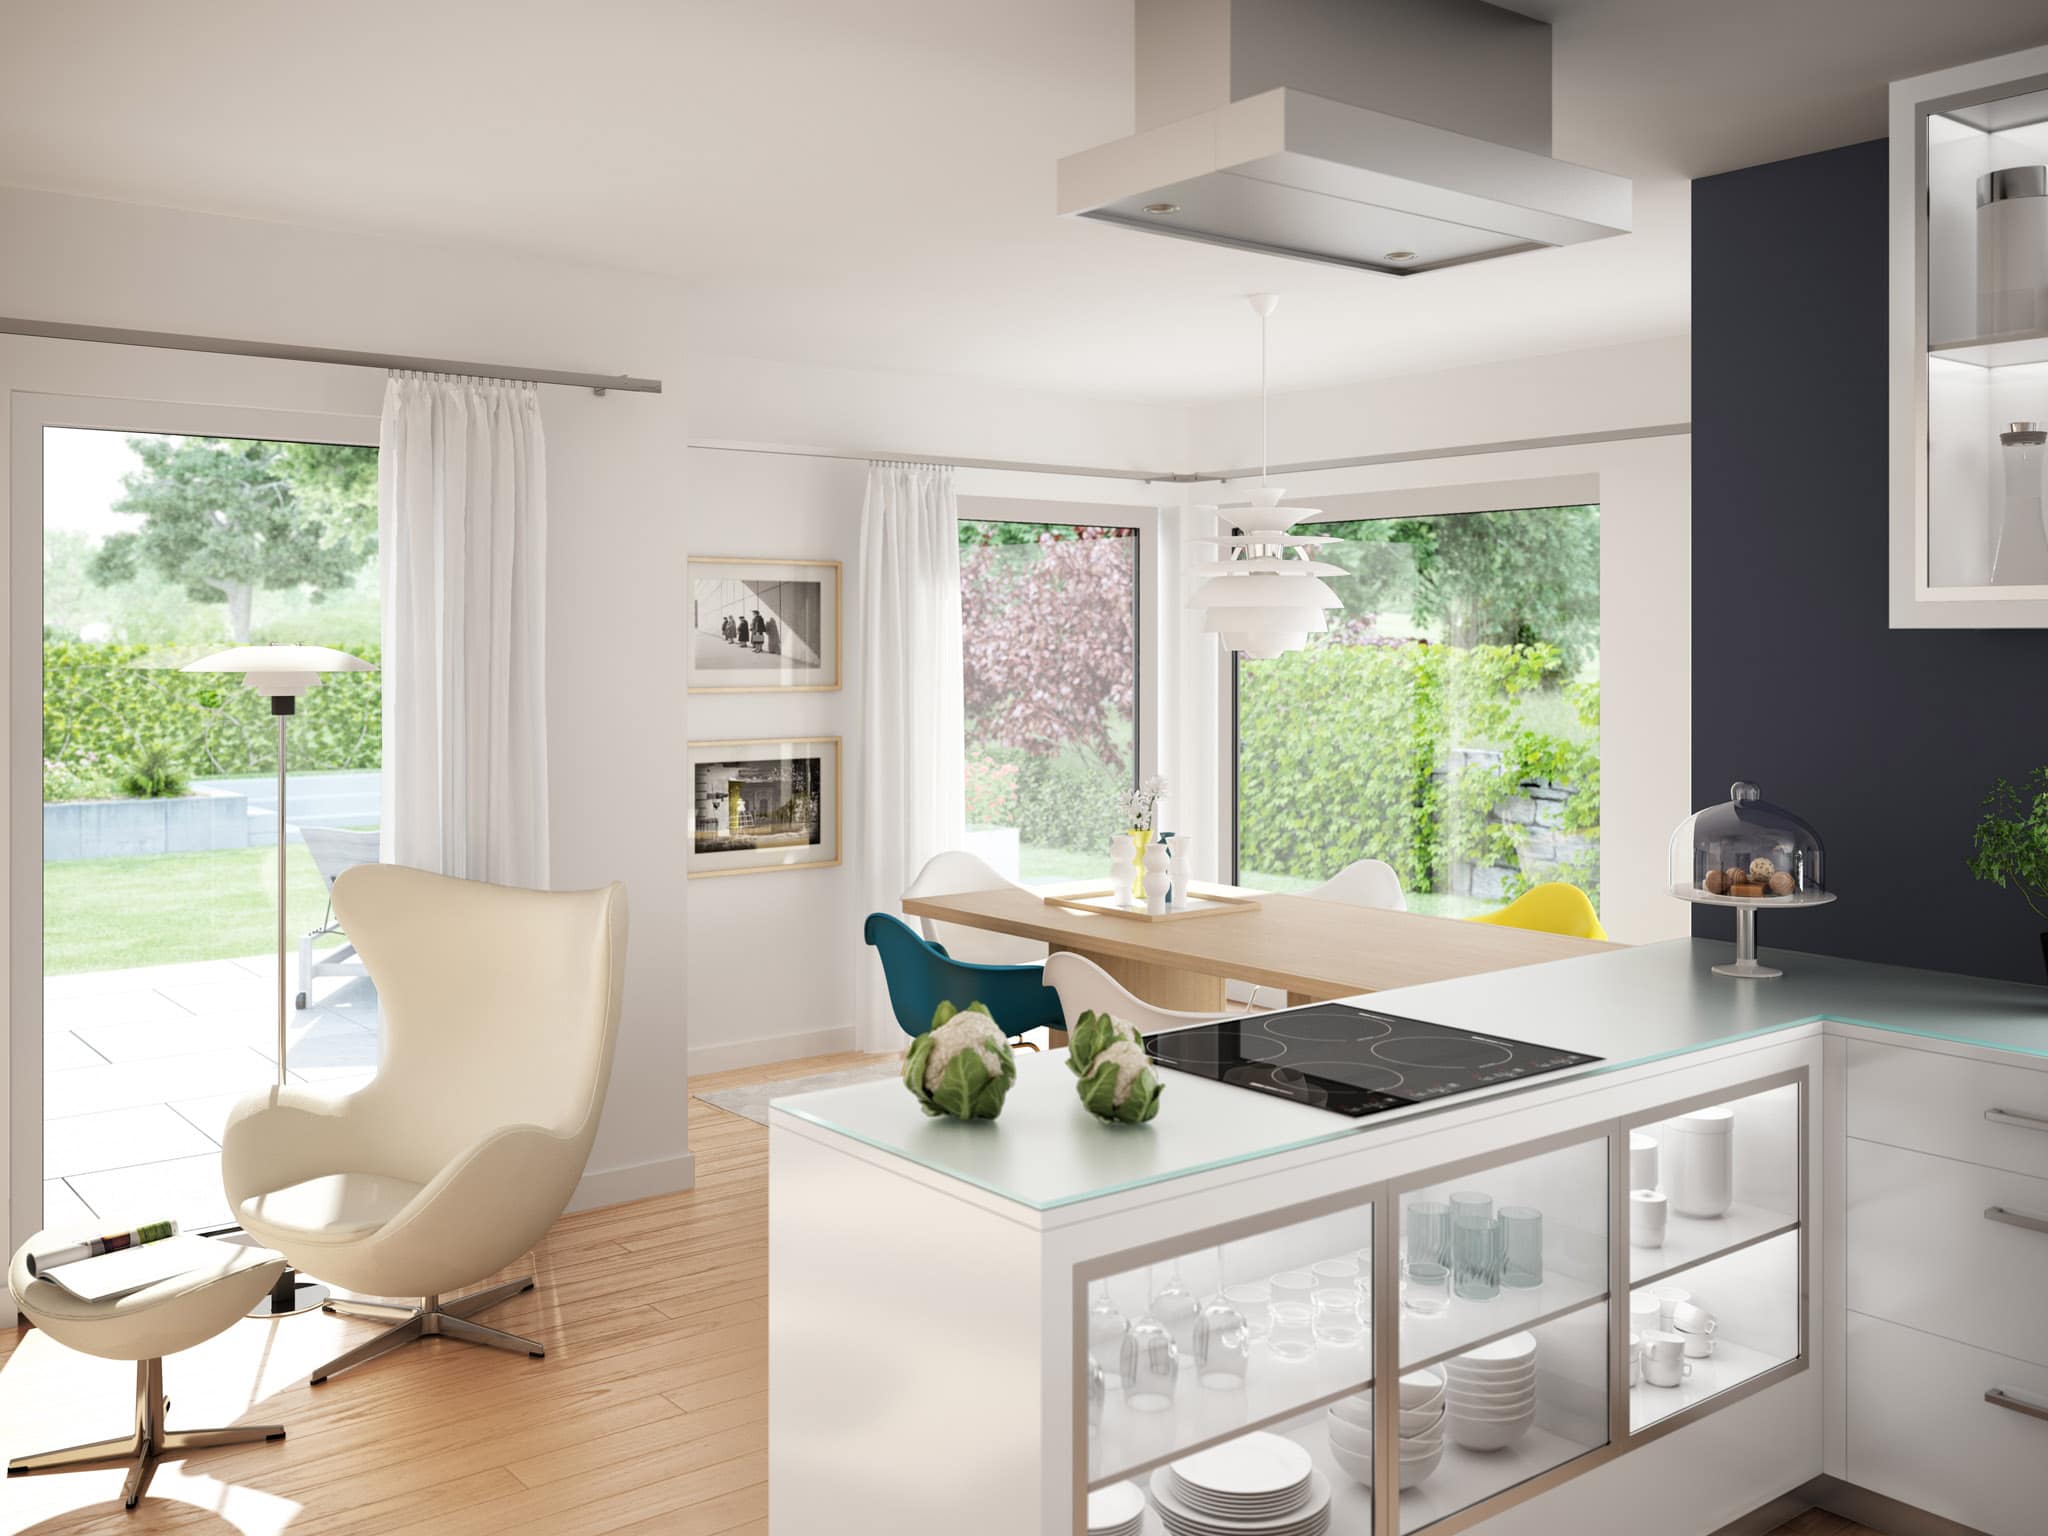 Offene Küche modern mit Essbereich - Ideen Inneneinrichtung Haus EVOLUTION 124 V4 von Bien Zenker - HausbauDirekt.de